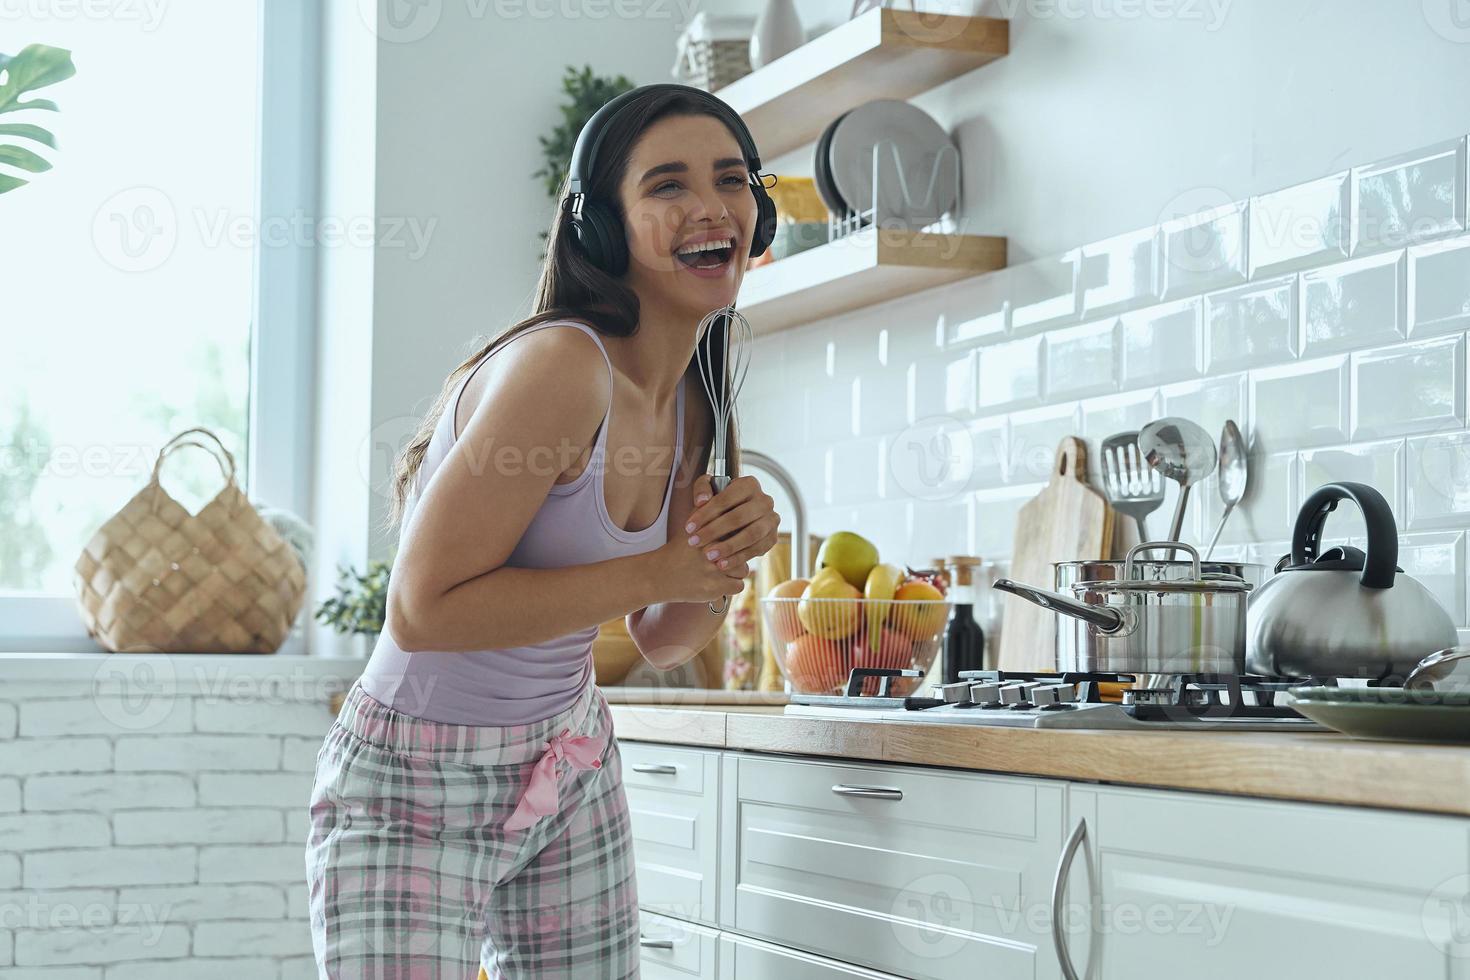 giovane donna giocosa che usa la frusta come microfono e sorride mentre cucina in cucina foto